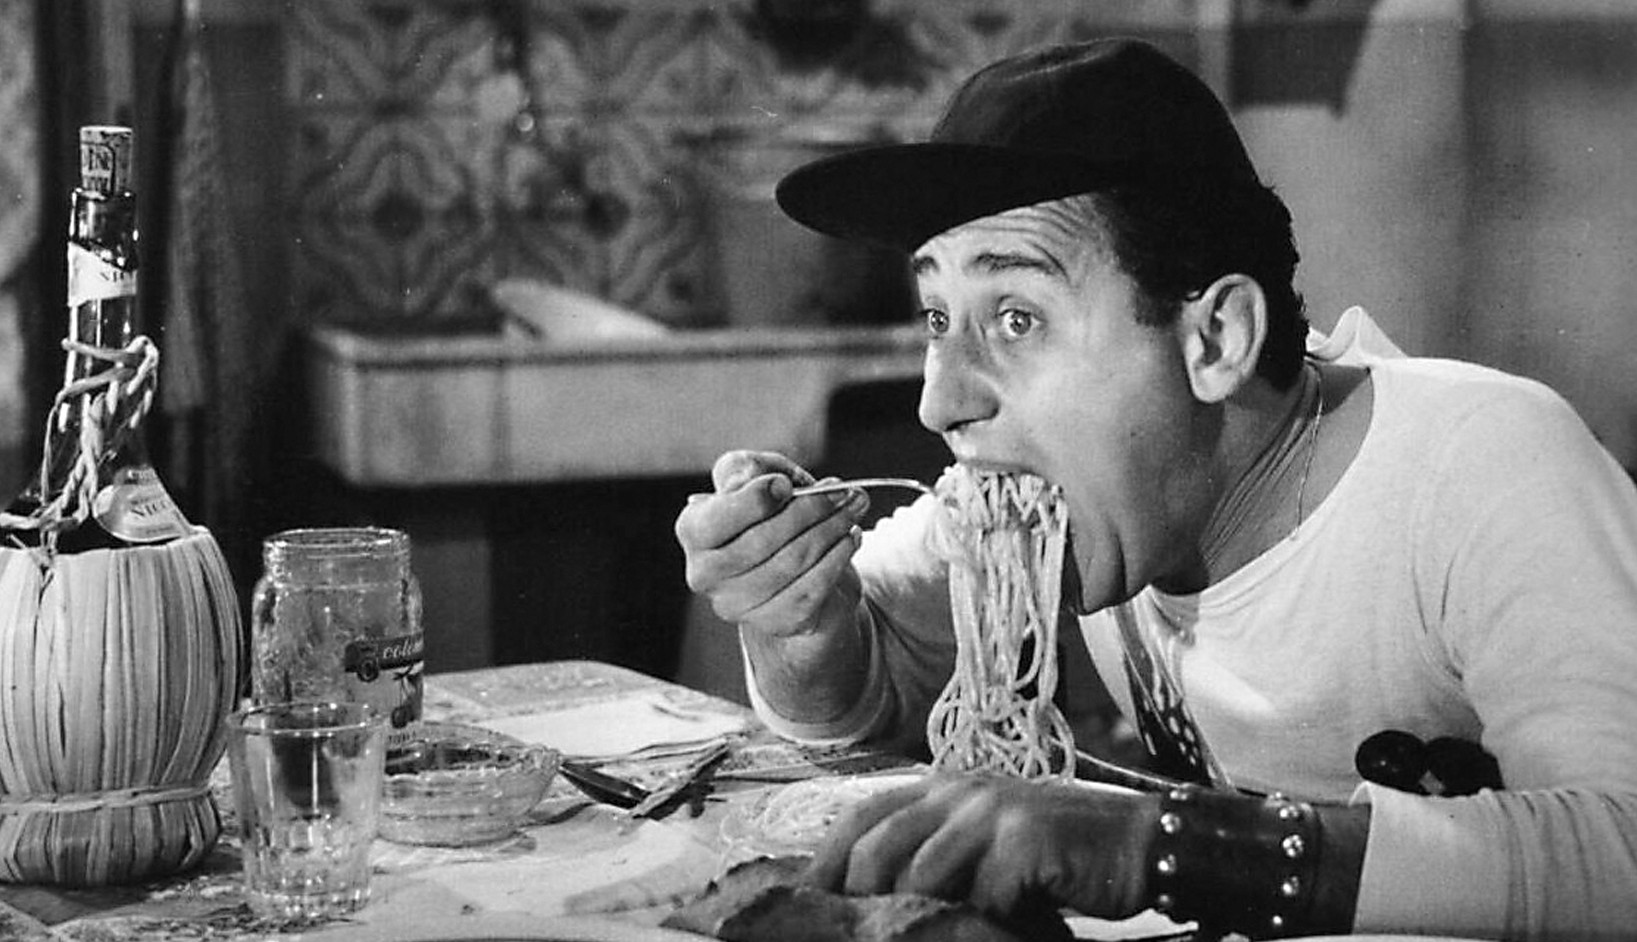 Alberto_Sordi_-_scena_degli_spaghetti_-_Un_americano_a_Roma_(1954).jpg